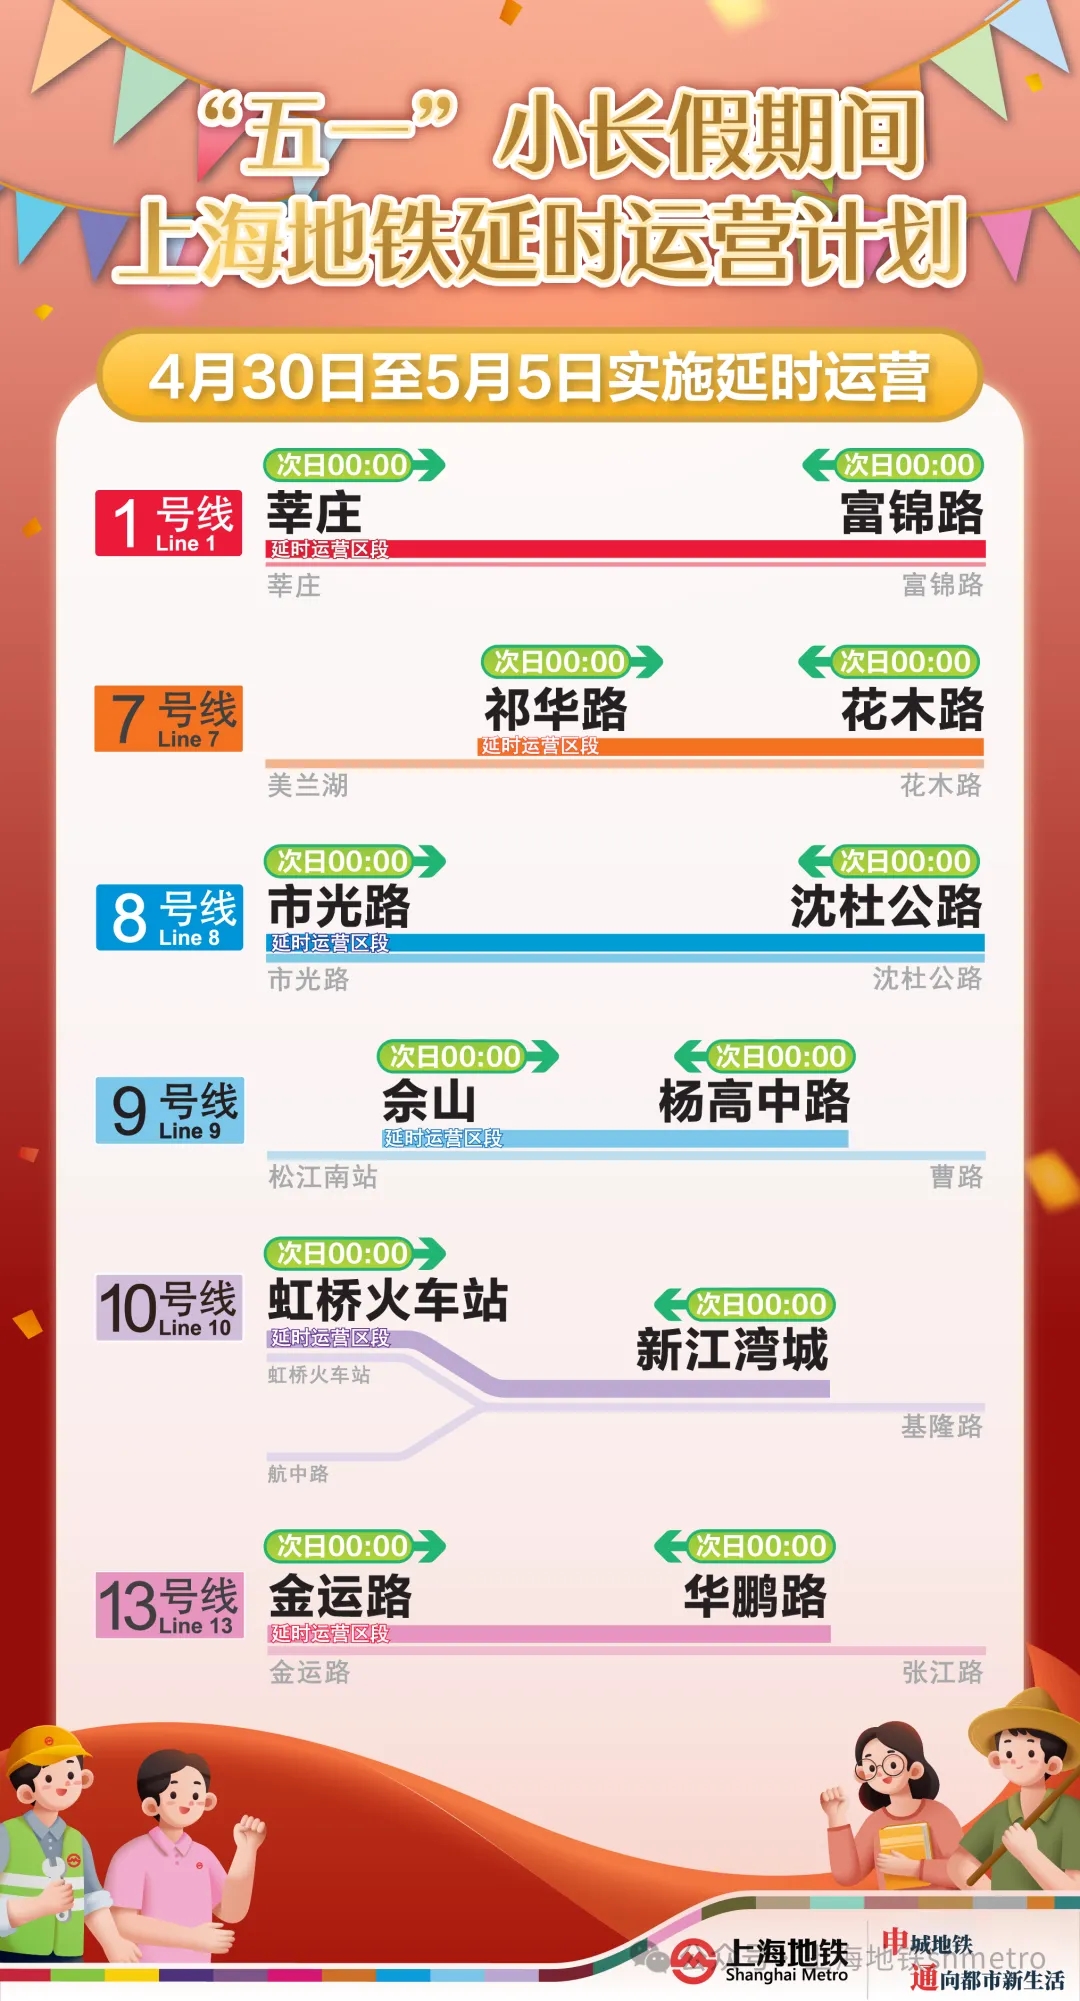 连续6天6条线延时运营到0点，“五一”上海地铁攻略来了